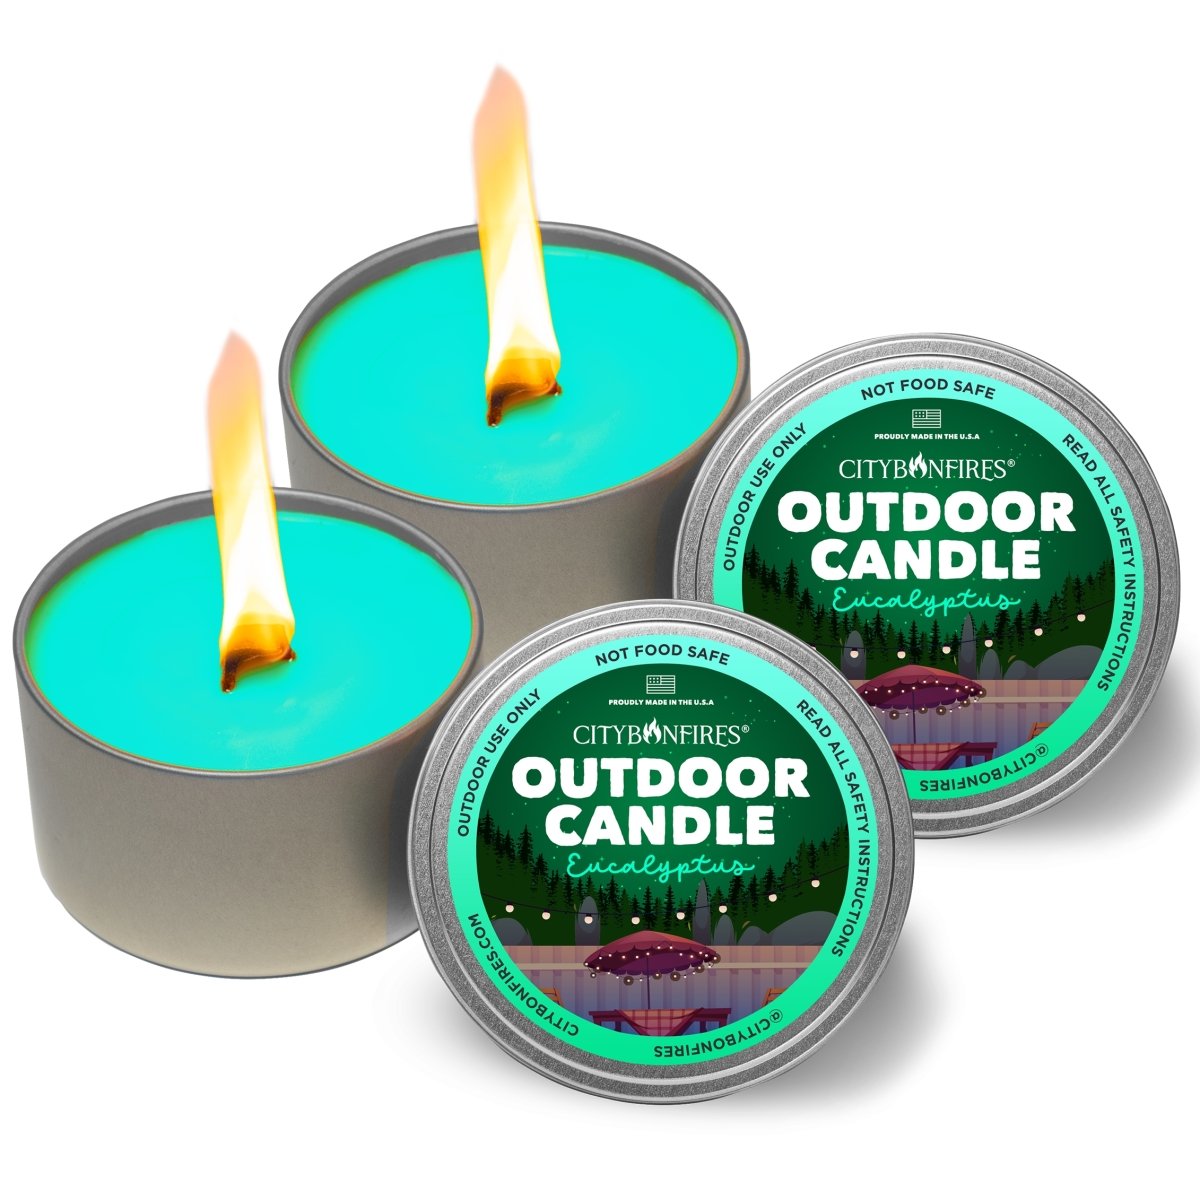 The Outdoor Candle - Eucalyptus - City Bonfires